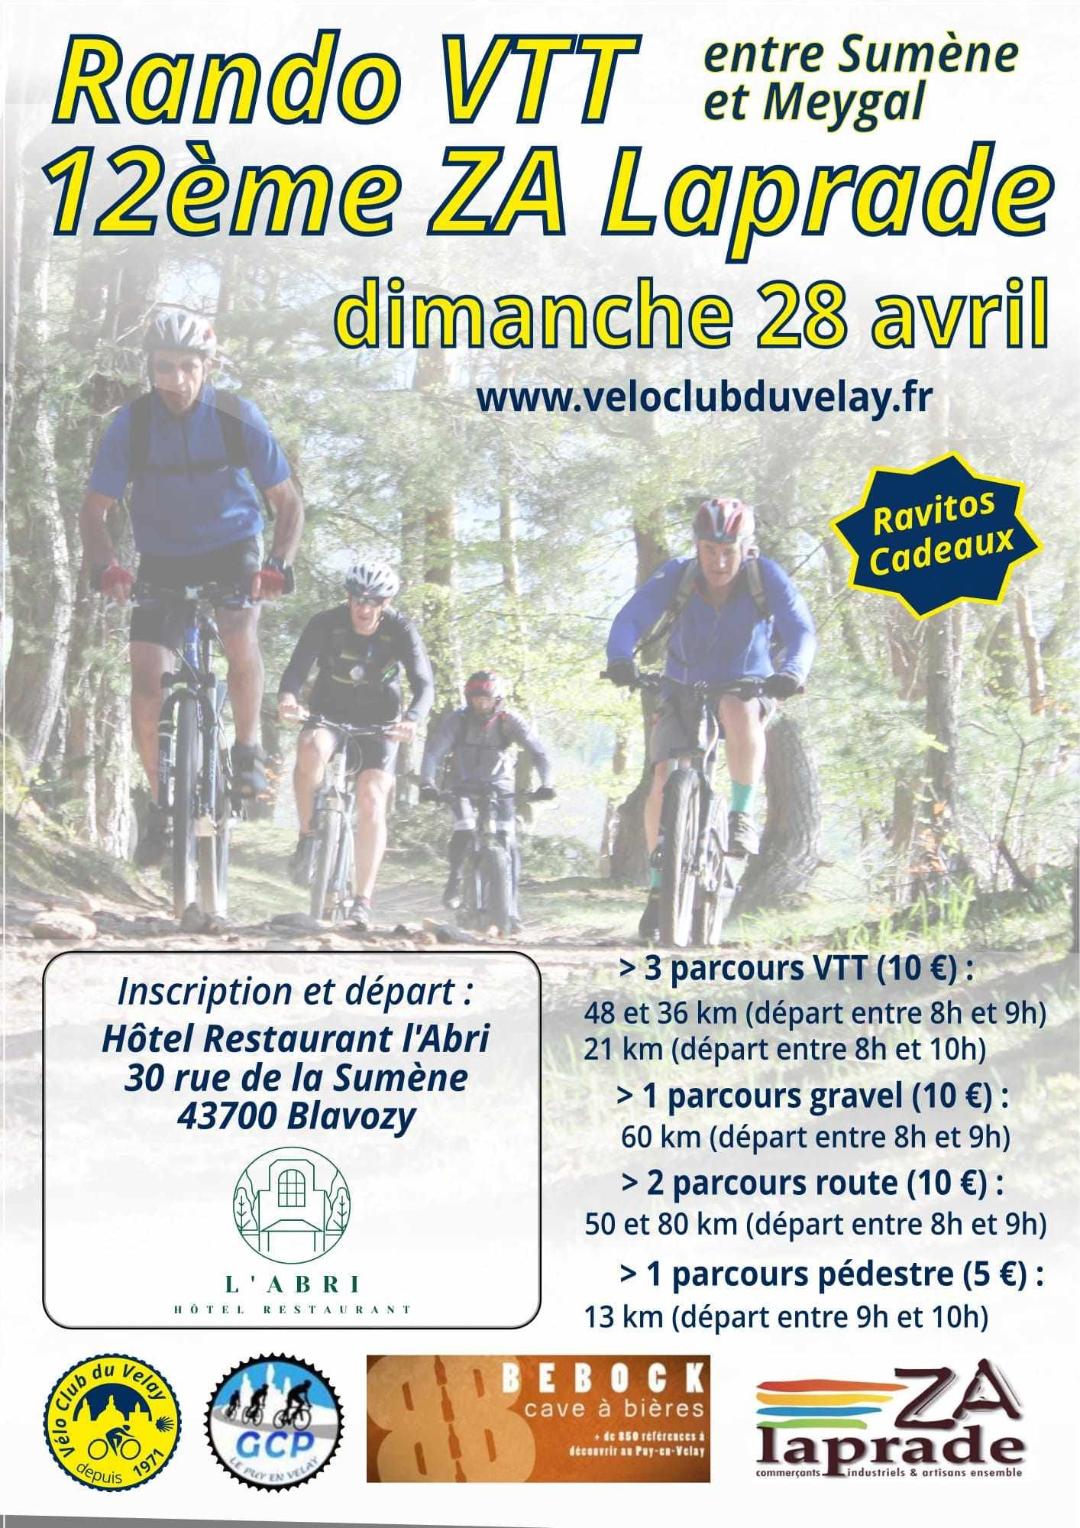 Le Vélo Club du Velay vous donne rendez-vous ce dimanche matin 28 avril pour sa 12e Rando VTT - Z.A.